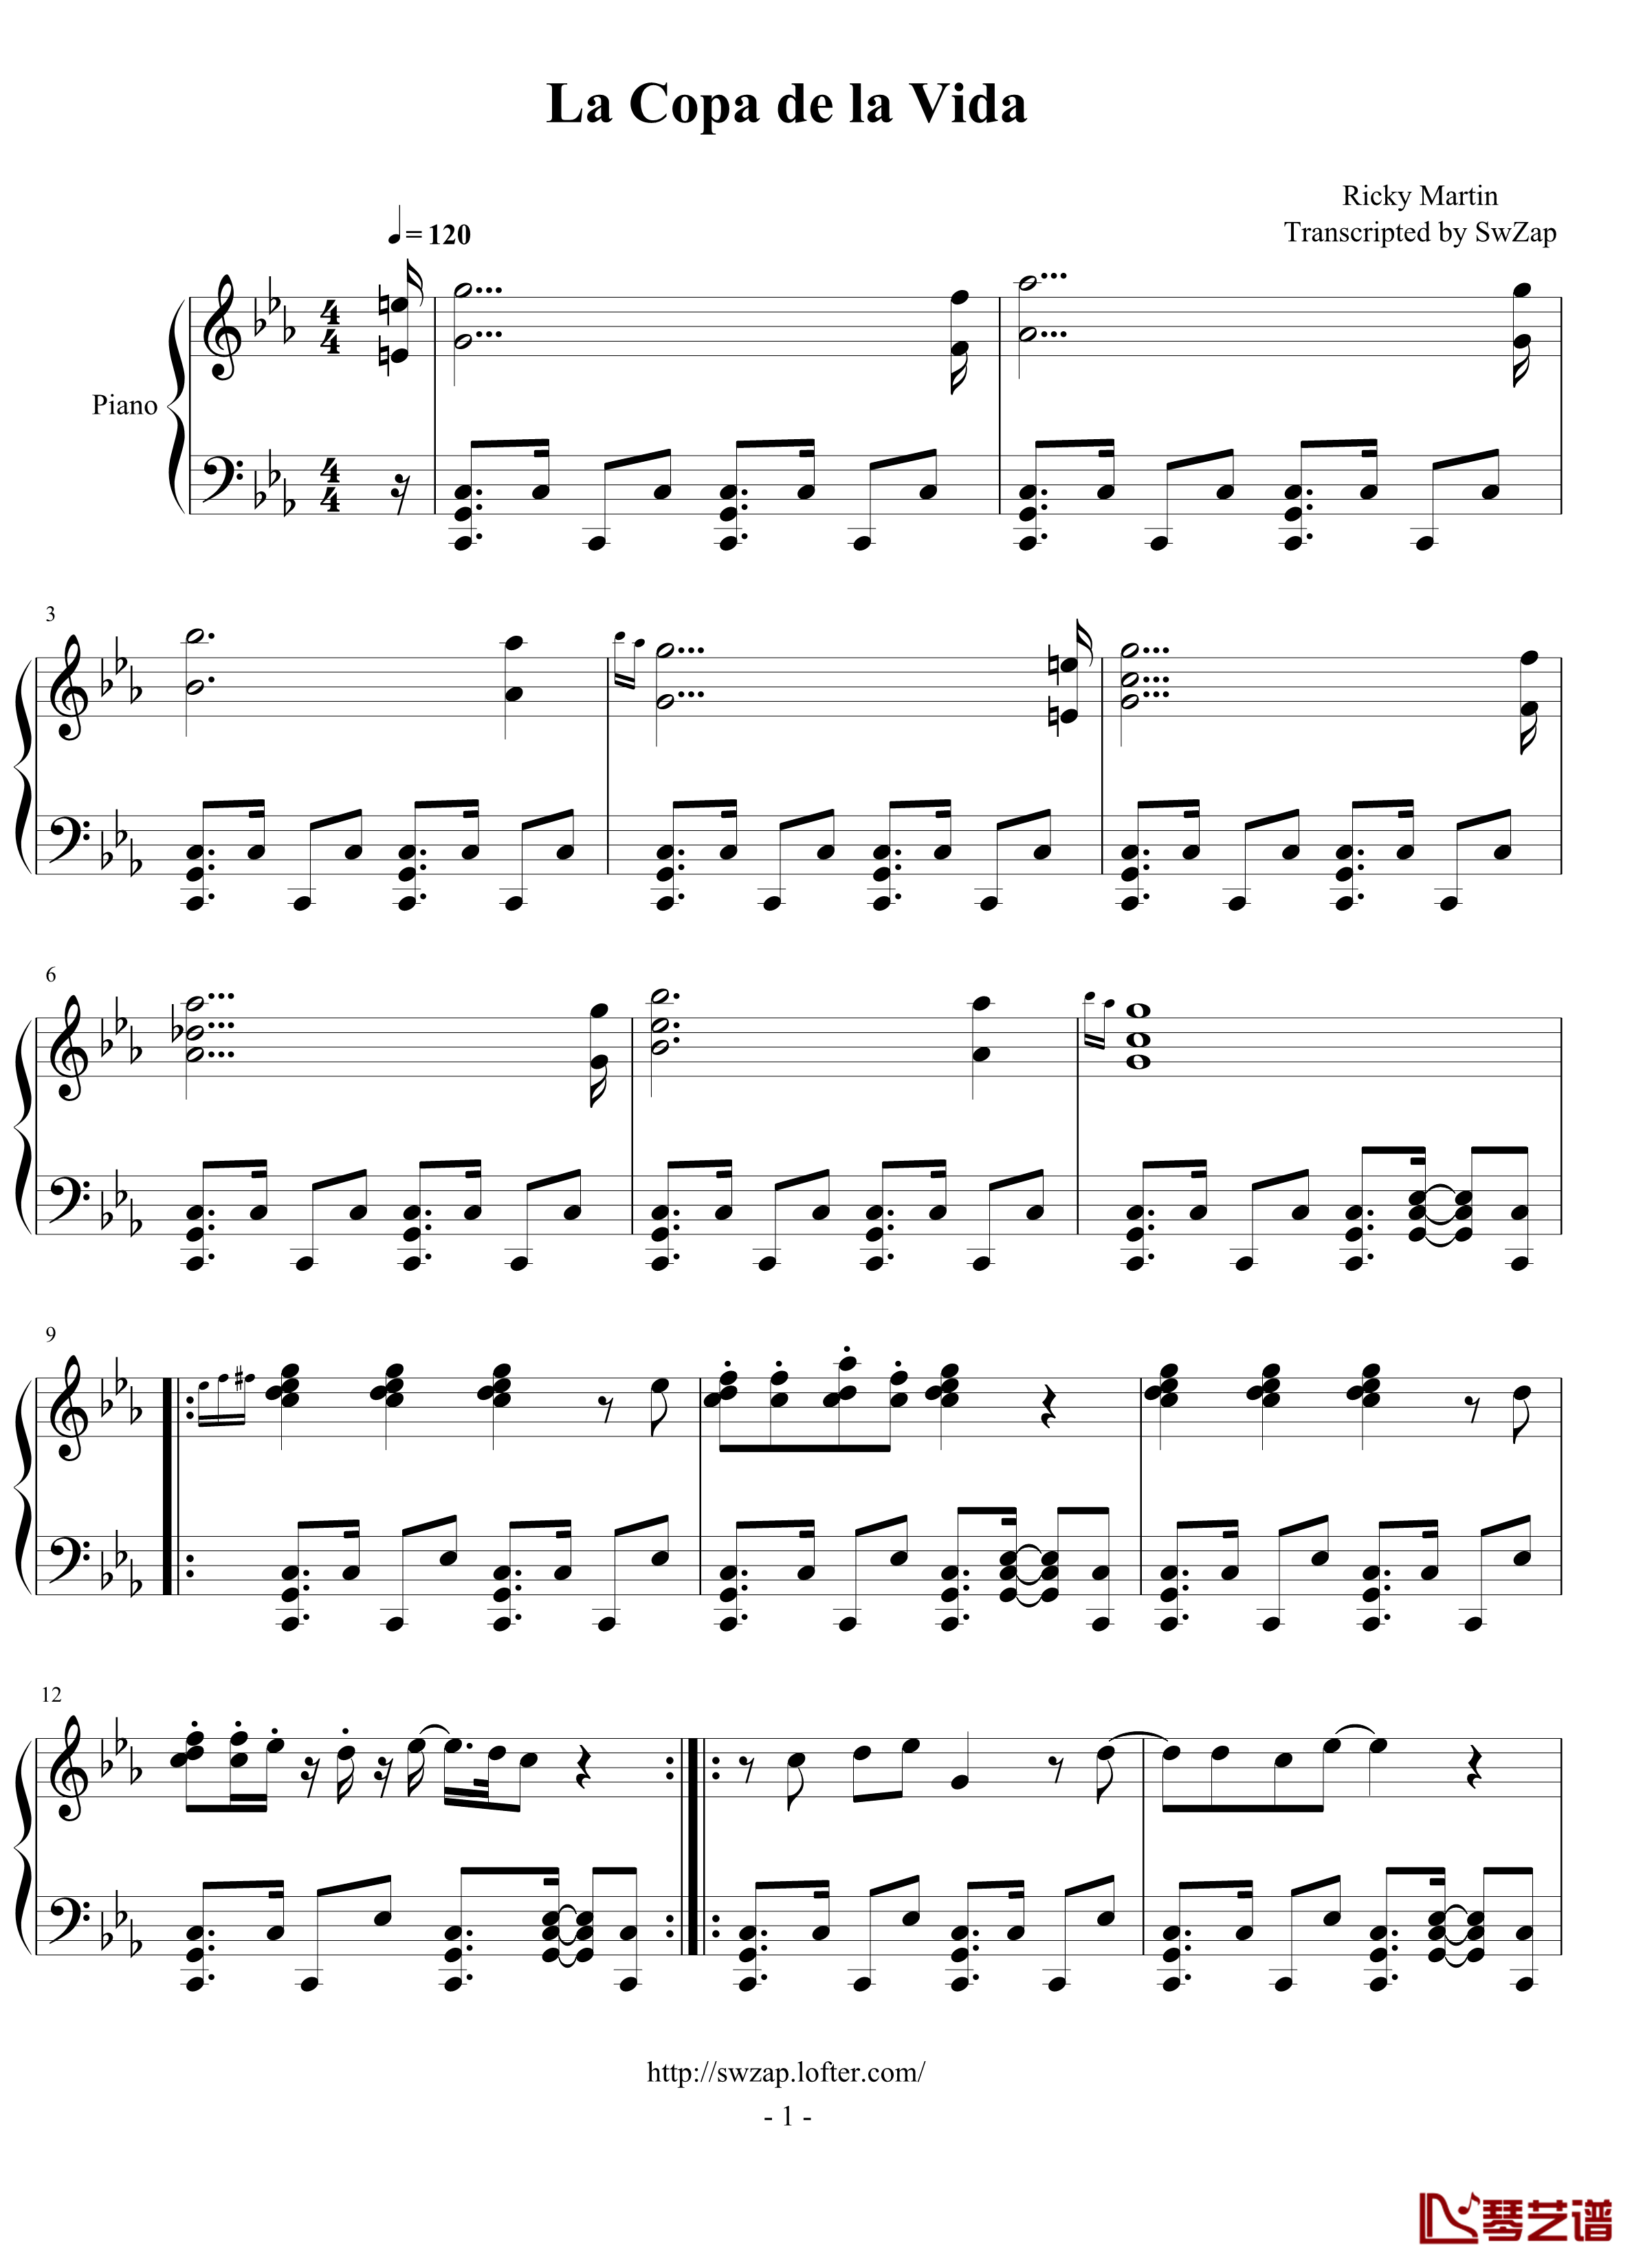 1998年世界杯官方歌曲《生命之杯》钢琴谱-瑞奇.马丁1